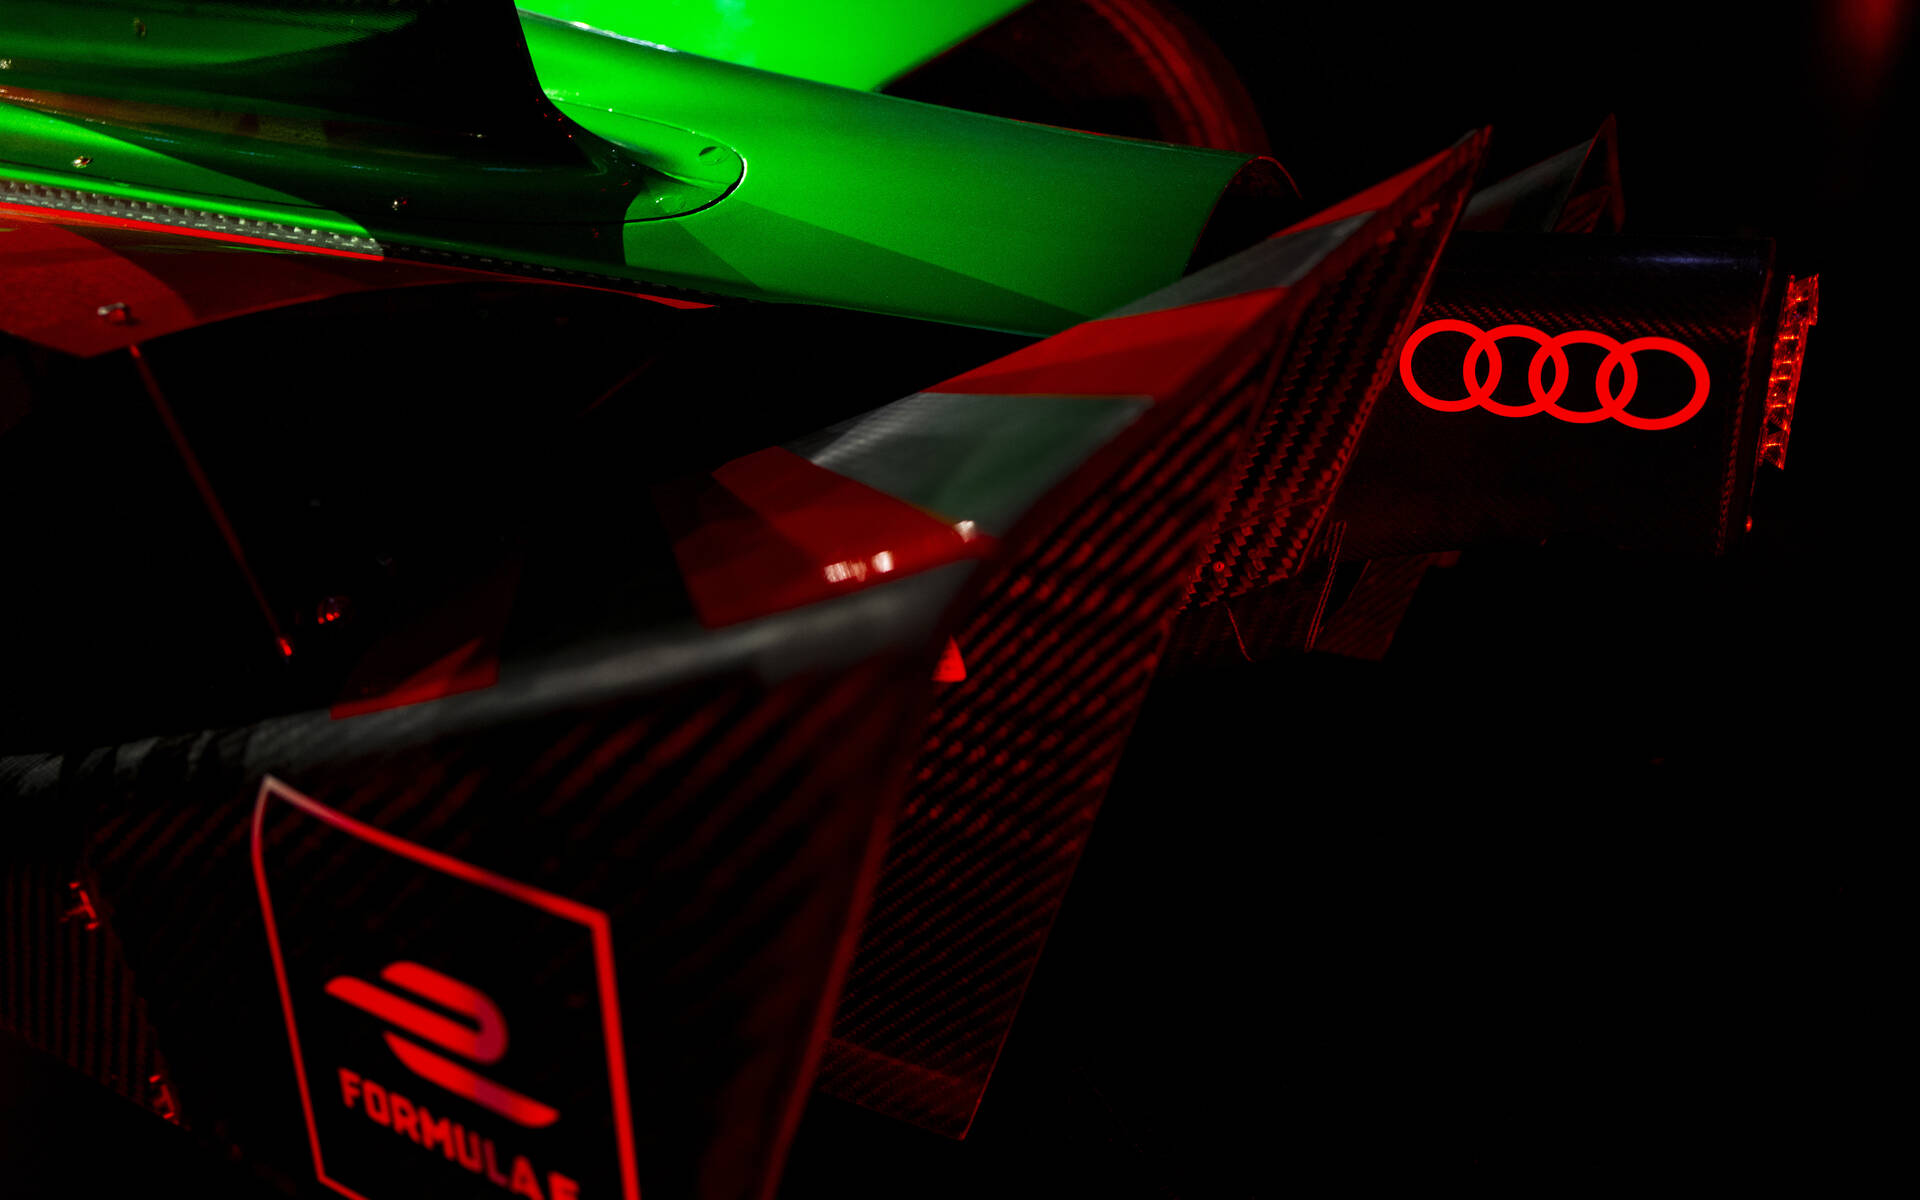 <p>Audi FE07 - Formule E Saison 7</p>